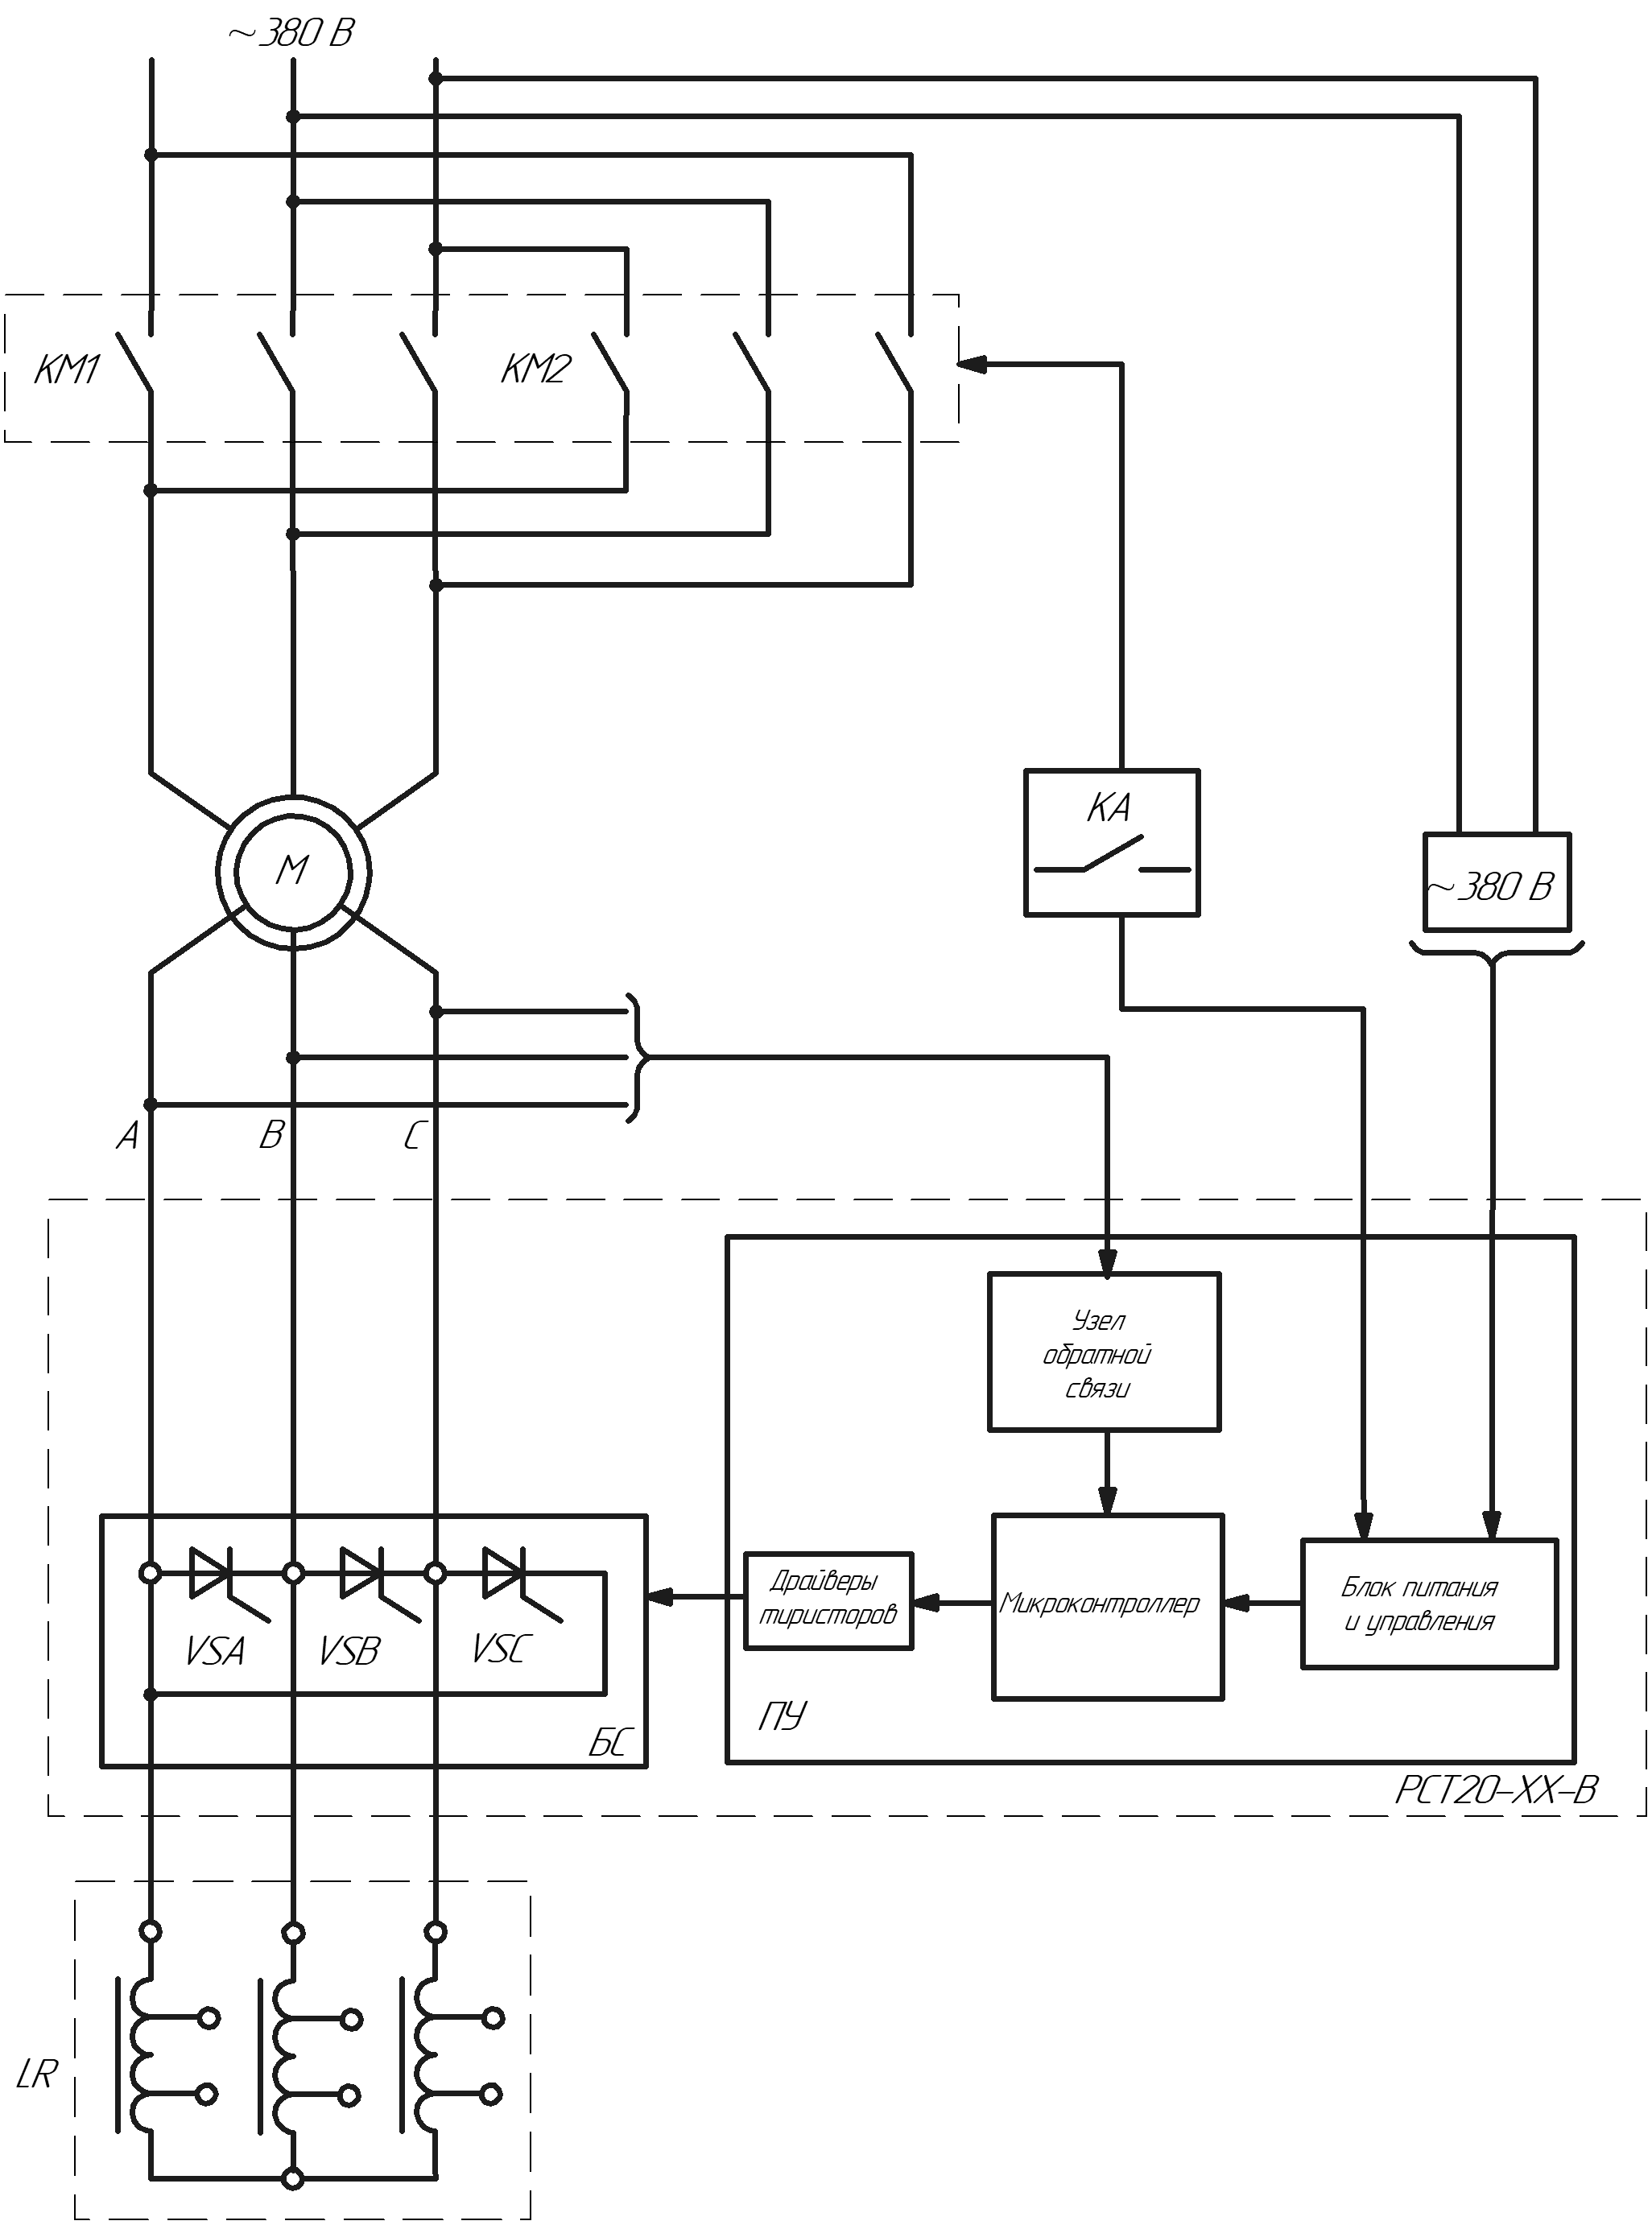 Схема функциональная дроссельного электропривода с тиристорным регулятором скорости РСТ20-В